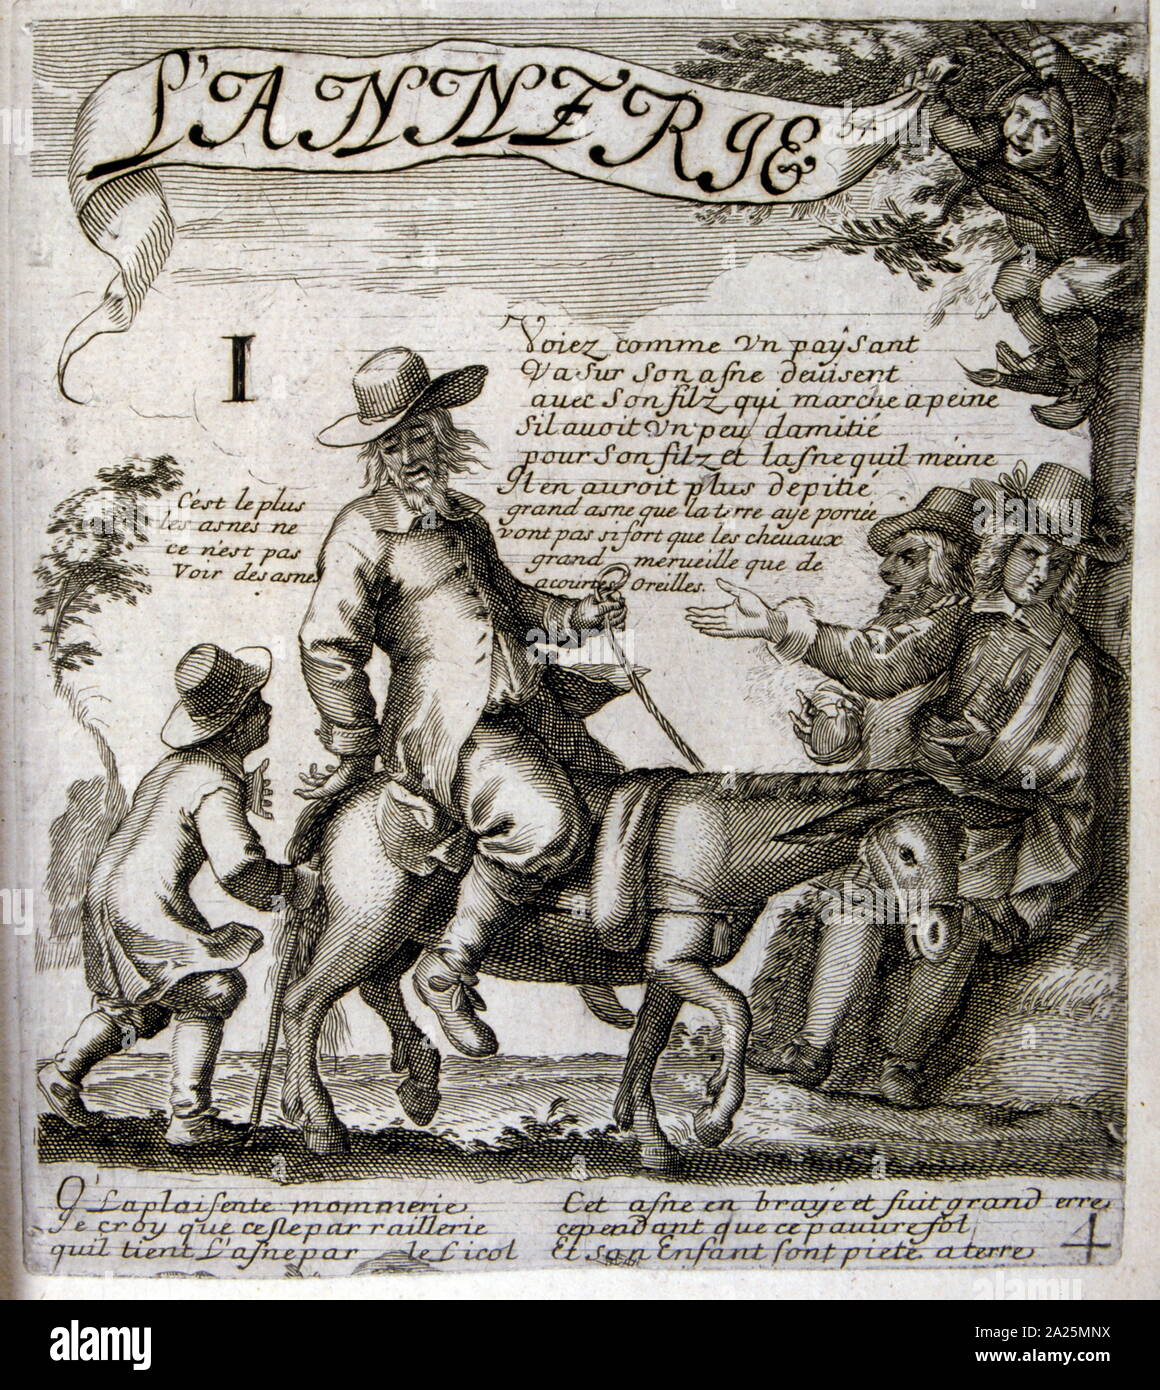 Abbildung von Jacques Lagniet (1620 - 1672), aus dem XVII Jahrhundert Ausgabe der Fabeln von Jean de La Fontaine (1621 - 1695), französischer fabulist und einer der meistgelesenen französischen Dichter des 17. Jahrhunderts. Er ist vor allem für seine Fabeln, die ein Modell für spätere fabulists in ganz Europa bekannt. Jean de La Fontaine gesammelten Fabeln aus einer Vielzahl von Quellen, sowohl in West- und Osteuropa, und passte sie in die Französische free Vers. Sie waren unter dem allgemeinen Titel der Fabeln in mehreren Bänden von 1668 bis 1694 ausgestellt und gelten als Klassiker der französischen Literatur. Stockfoto